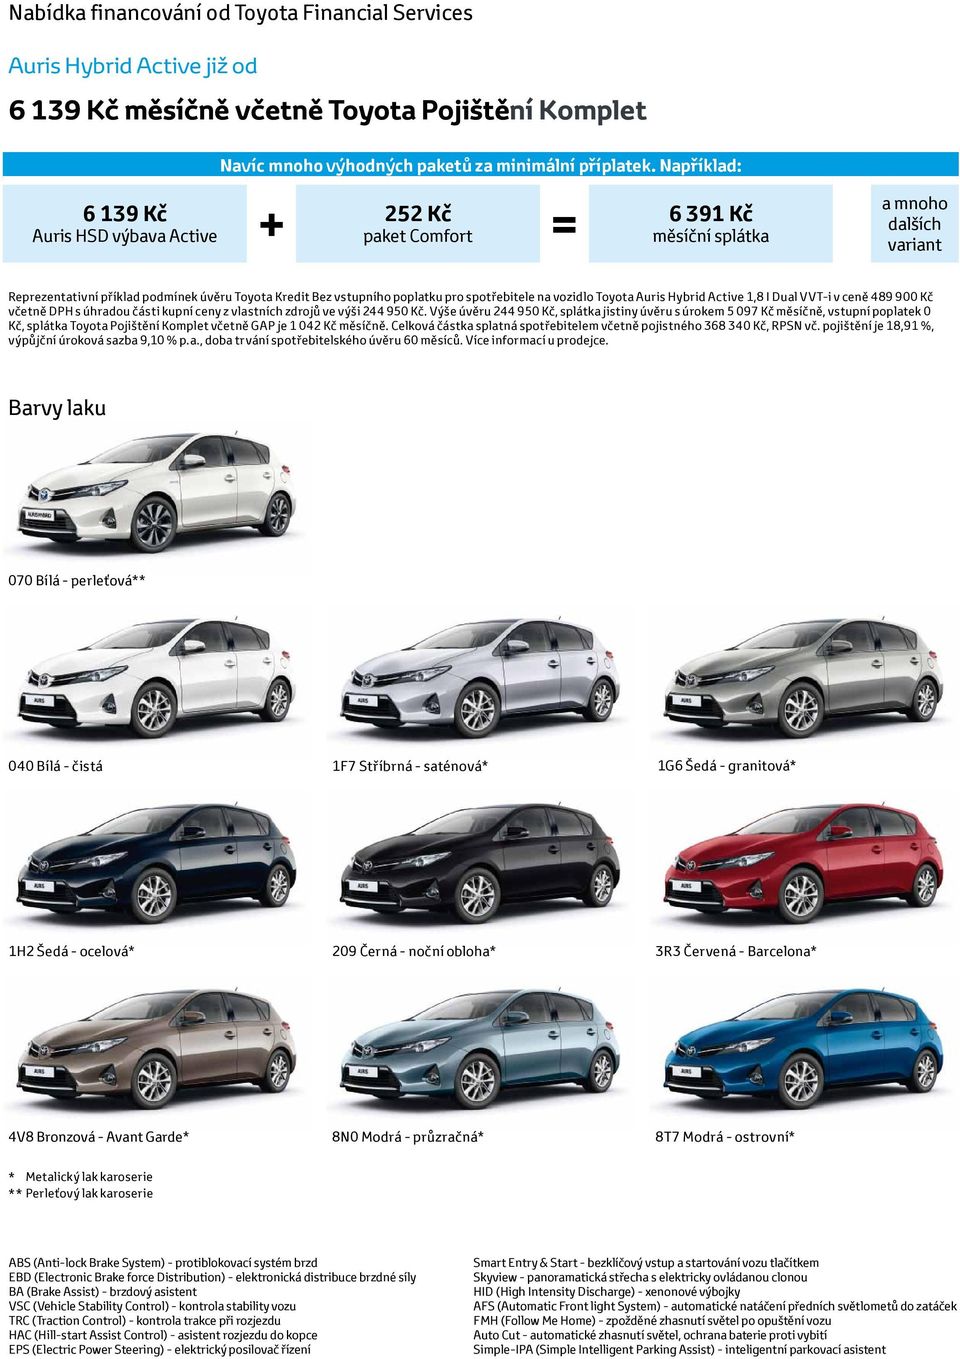 spotřebitele na vozidlo Toyota Auris Hybrid Active 1,8 I Dual VVT-i v ceně 489 900 Kč včetně DPH s úhradou části kupní ceny z vlastních zdrojů ve výši 244 950 Kč.